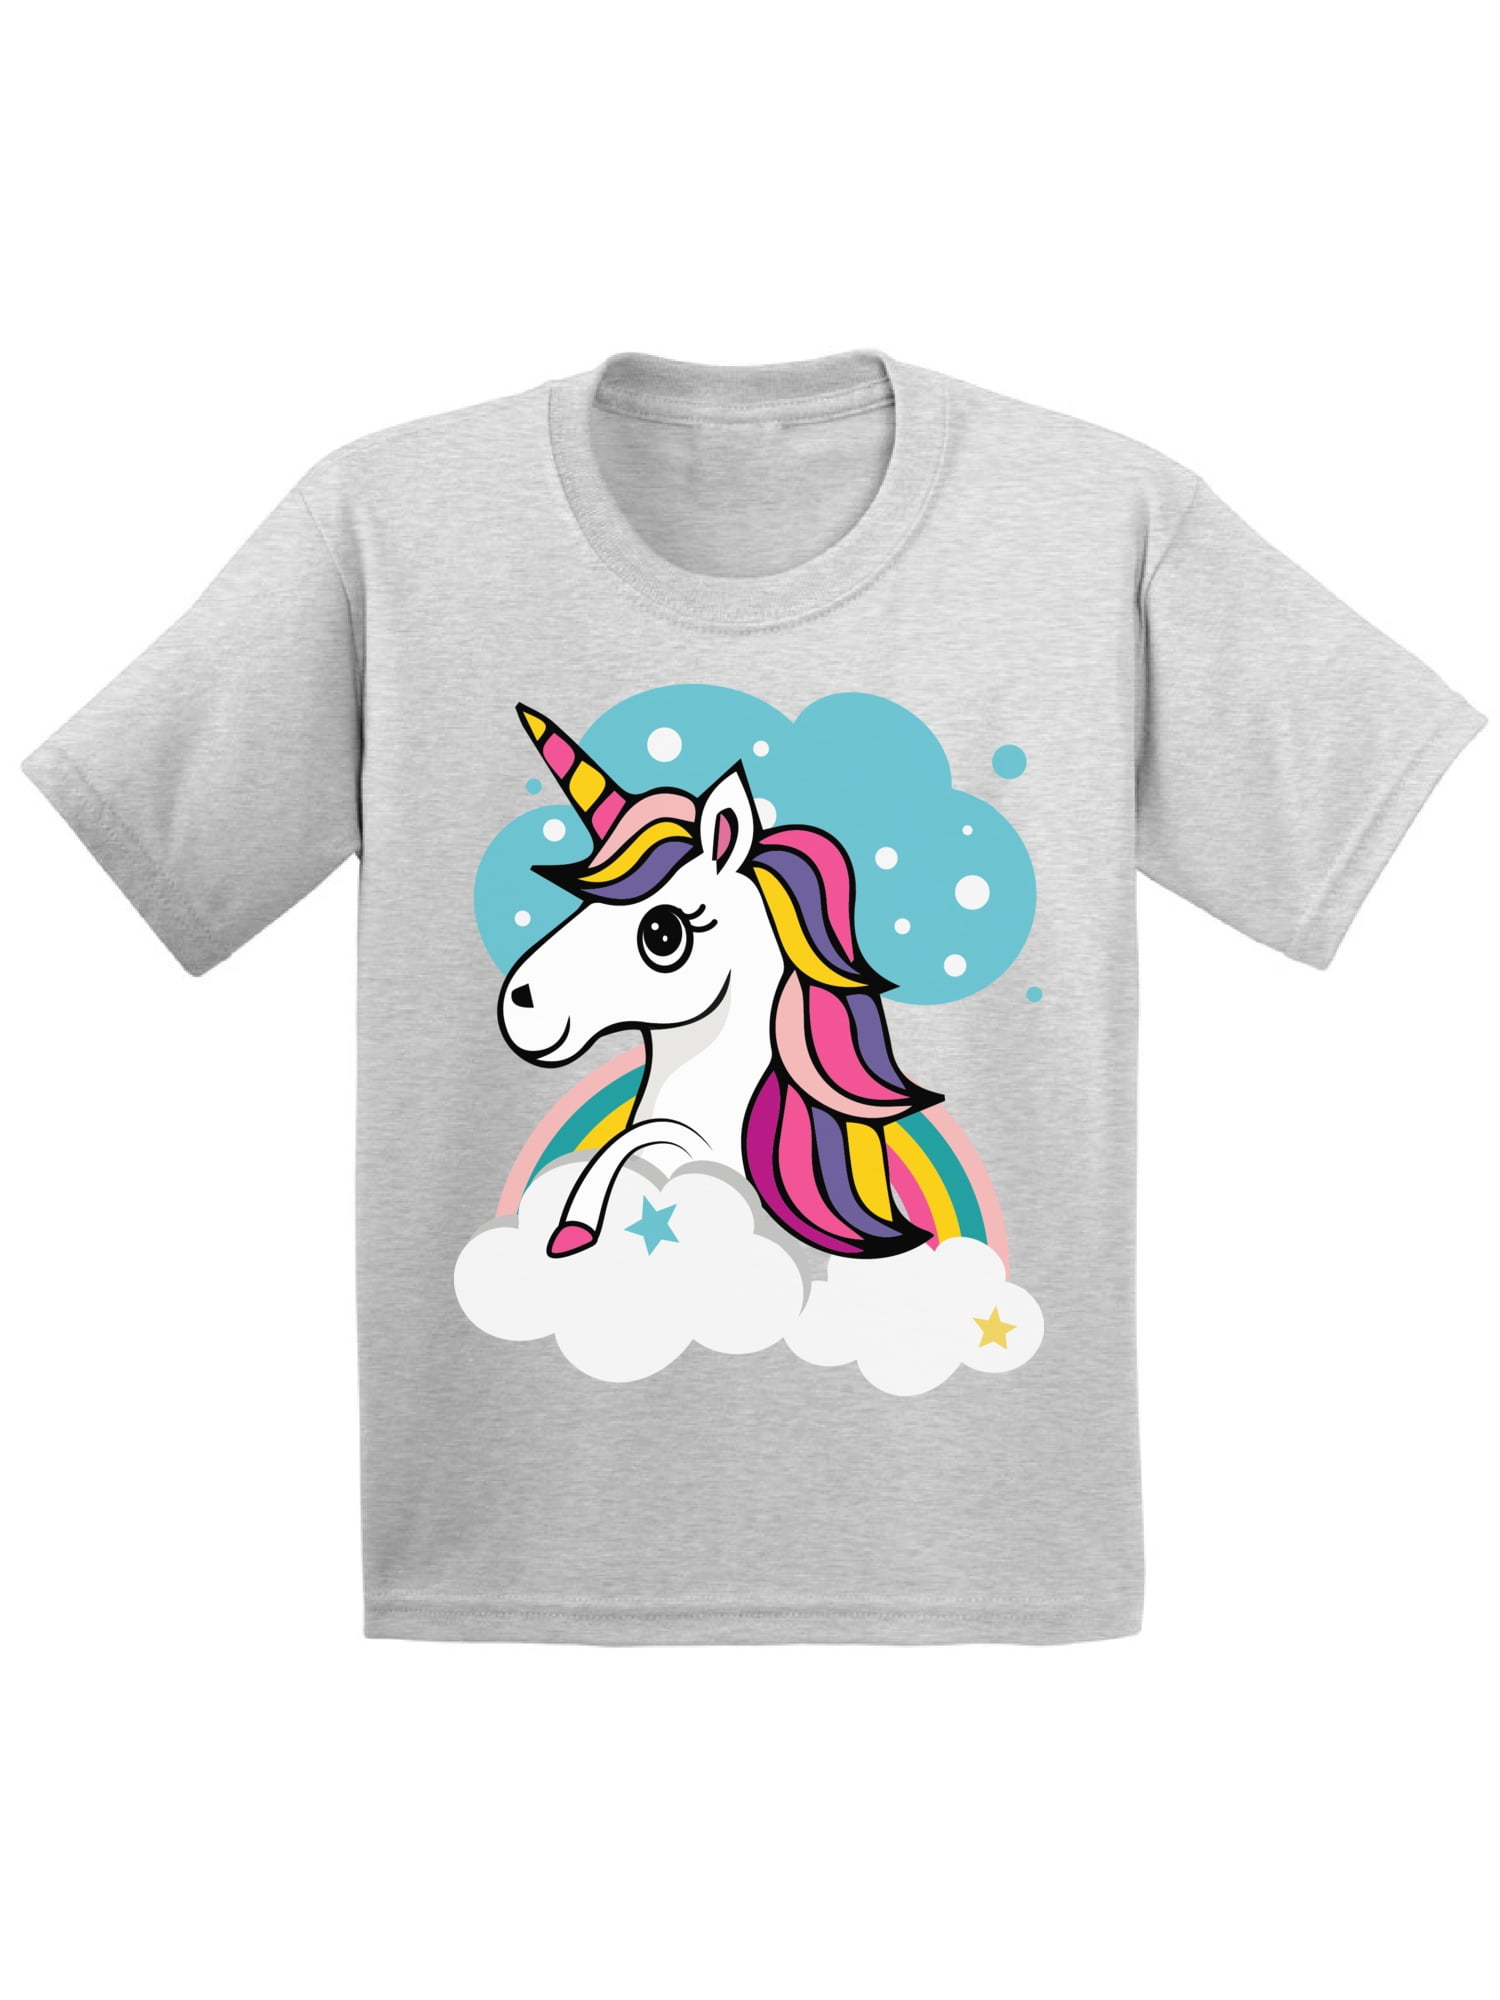 Awkward Styles Cute Unicorn Toddler Shirt Unicorn Shirt Unicorn Gifts ...